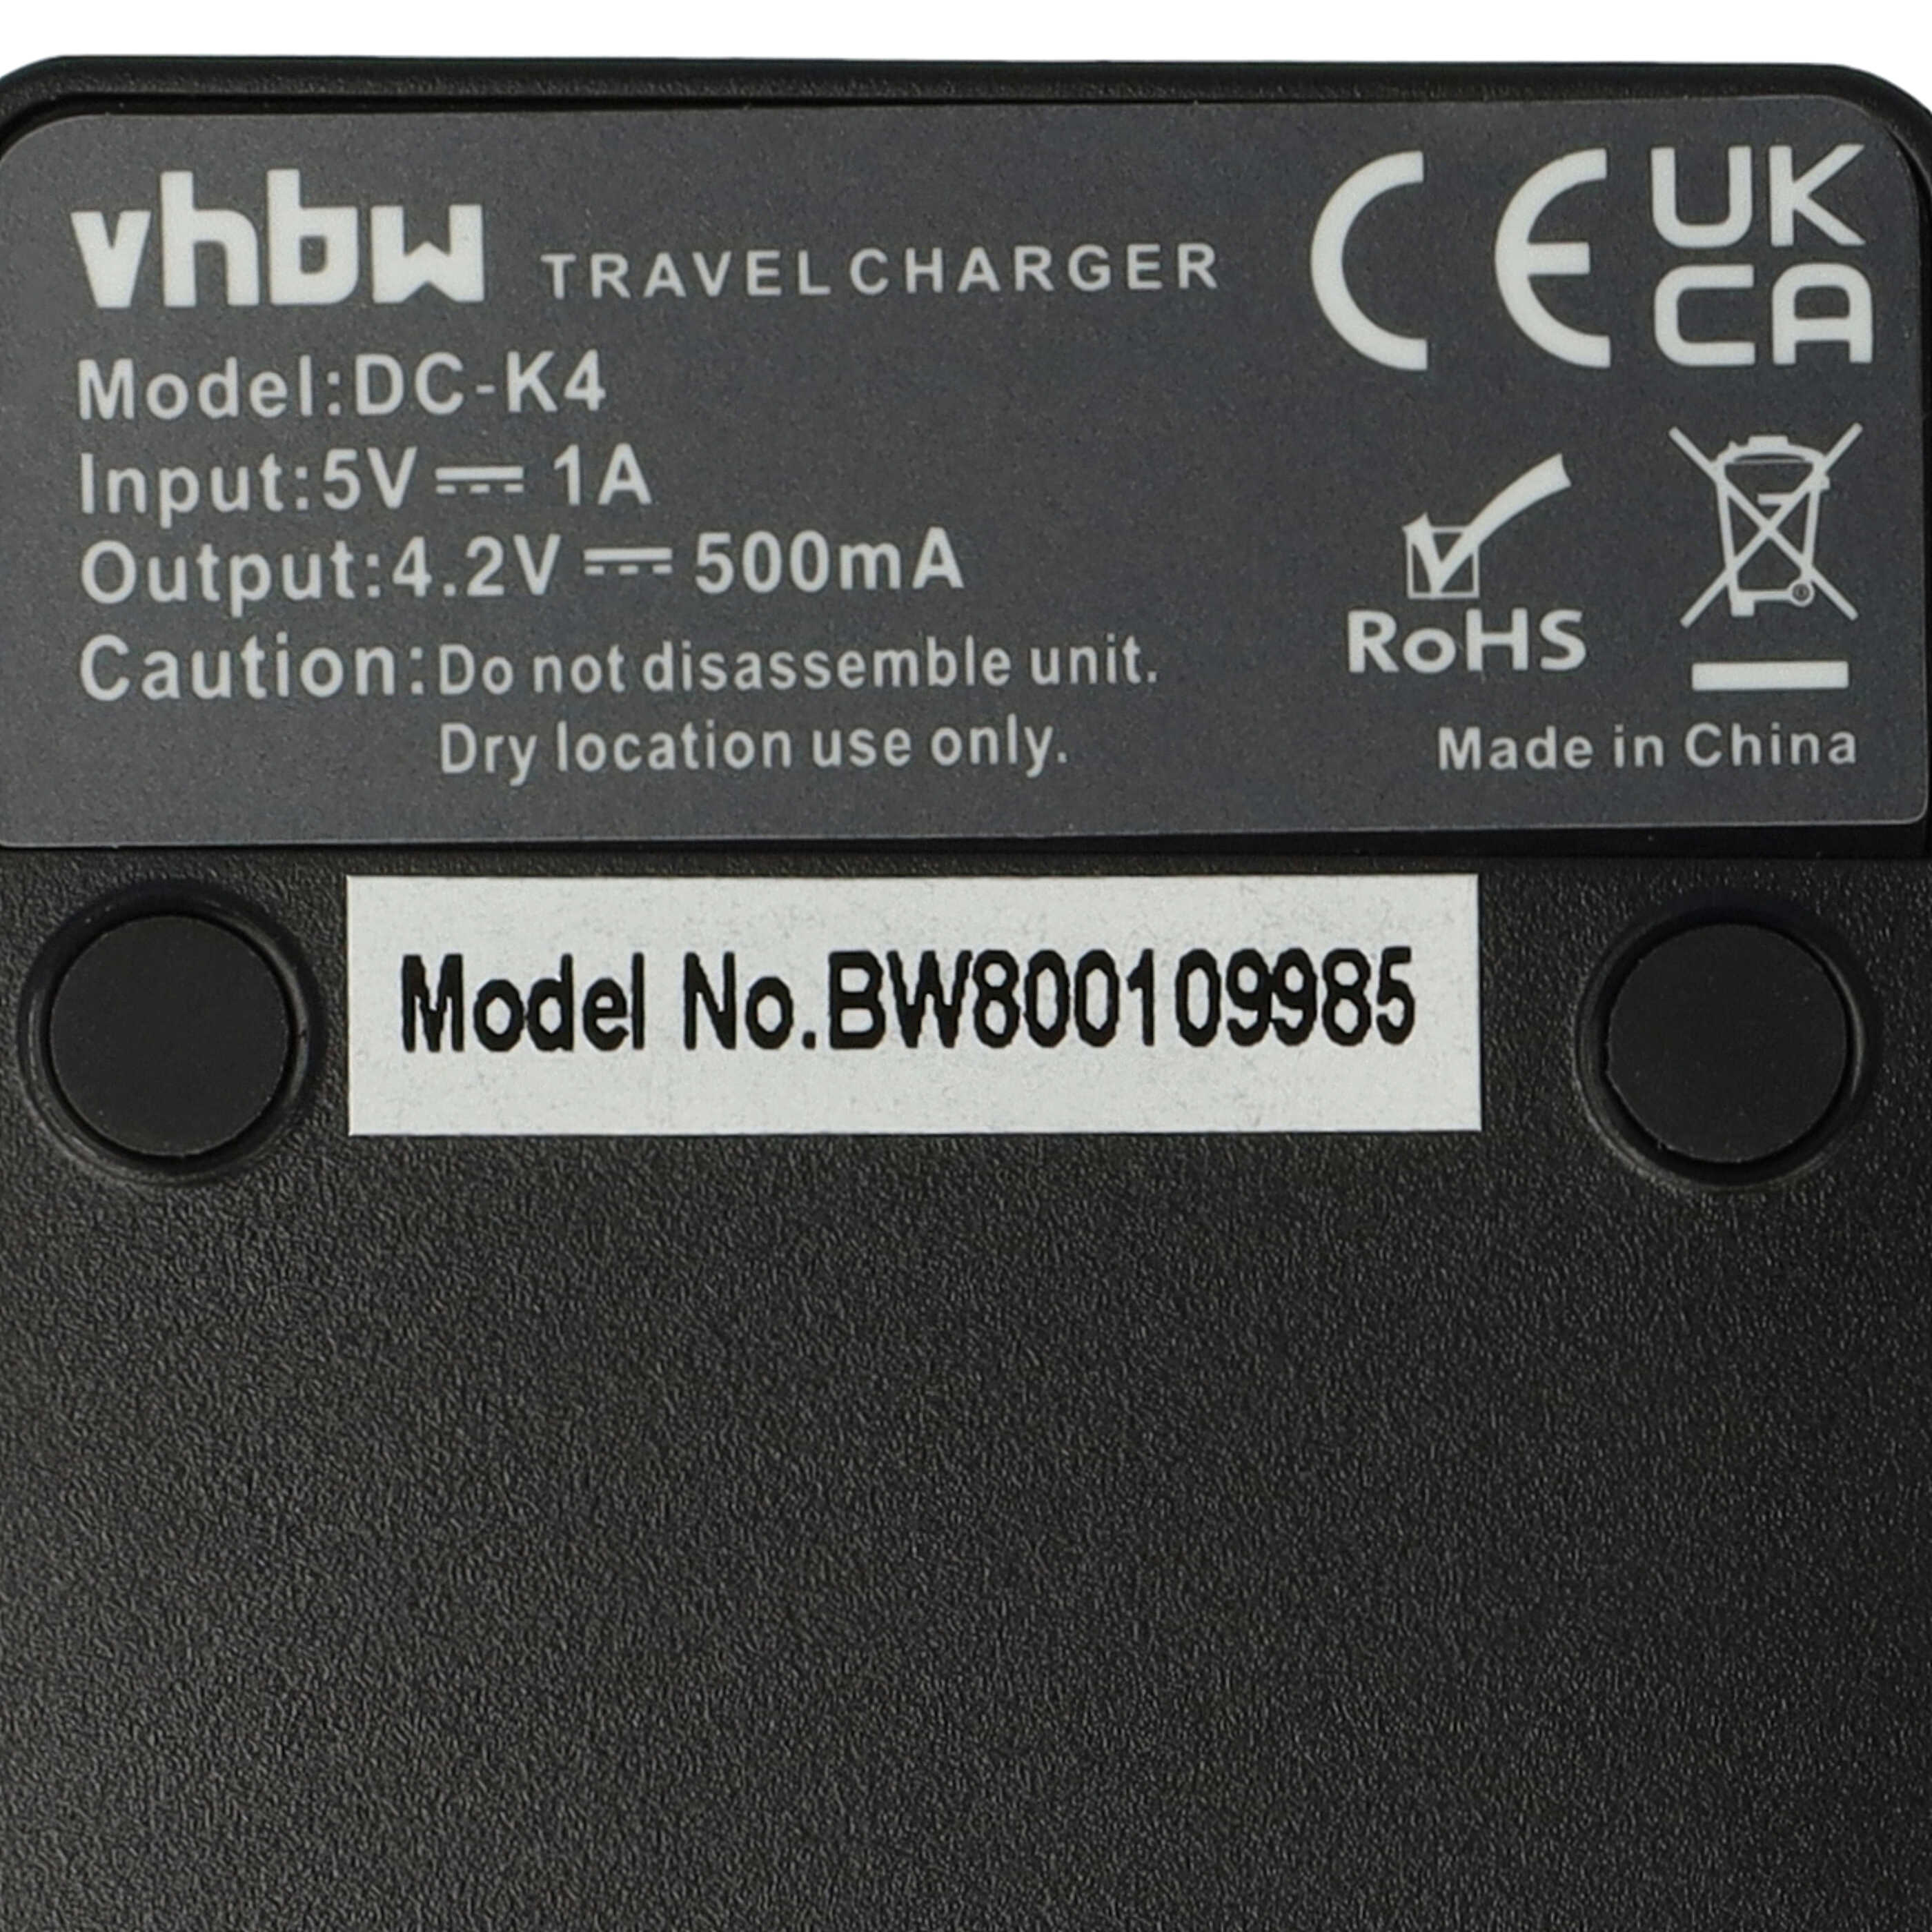 Akku Ladegerät passend für Lumix DMC-FT7 Kamera u.a. - 0,5 A, 4,2 V